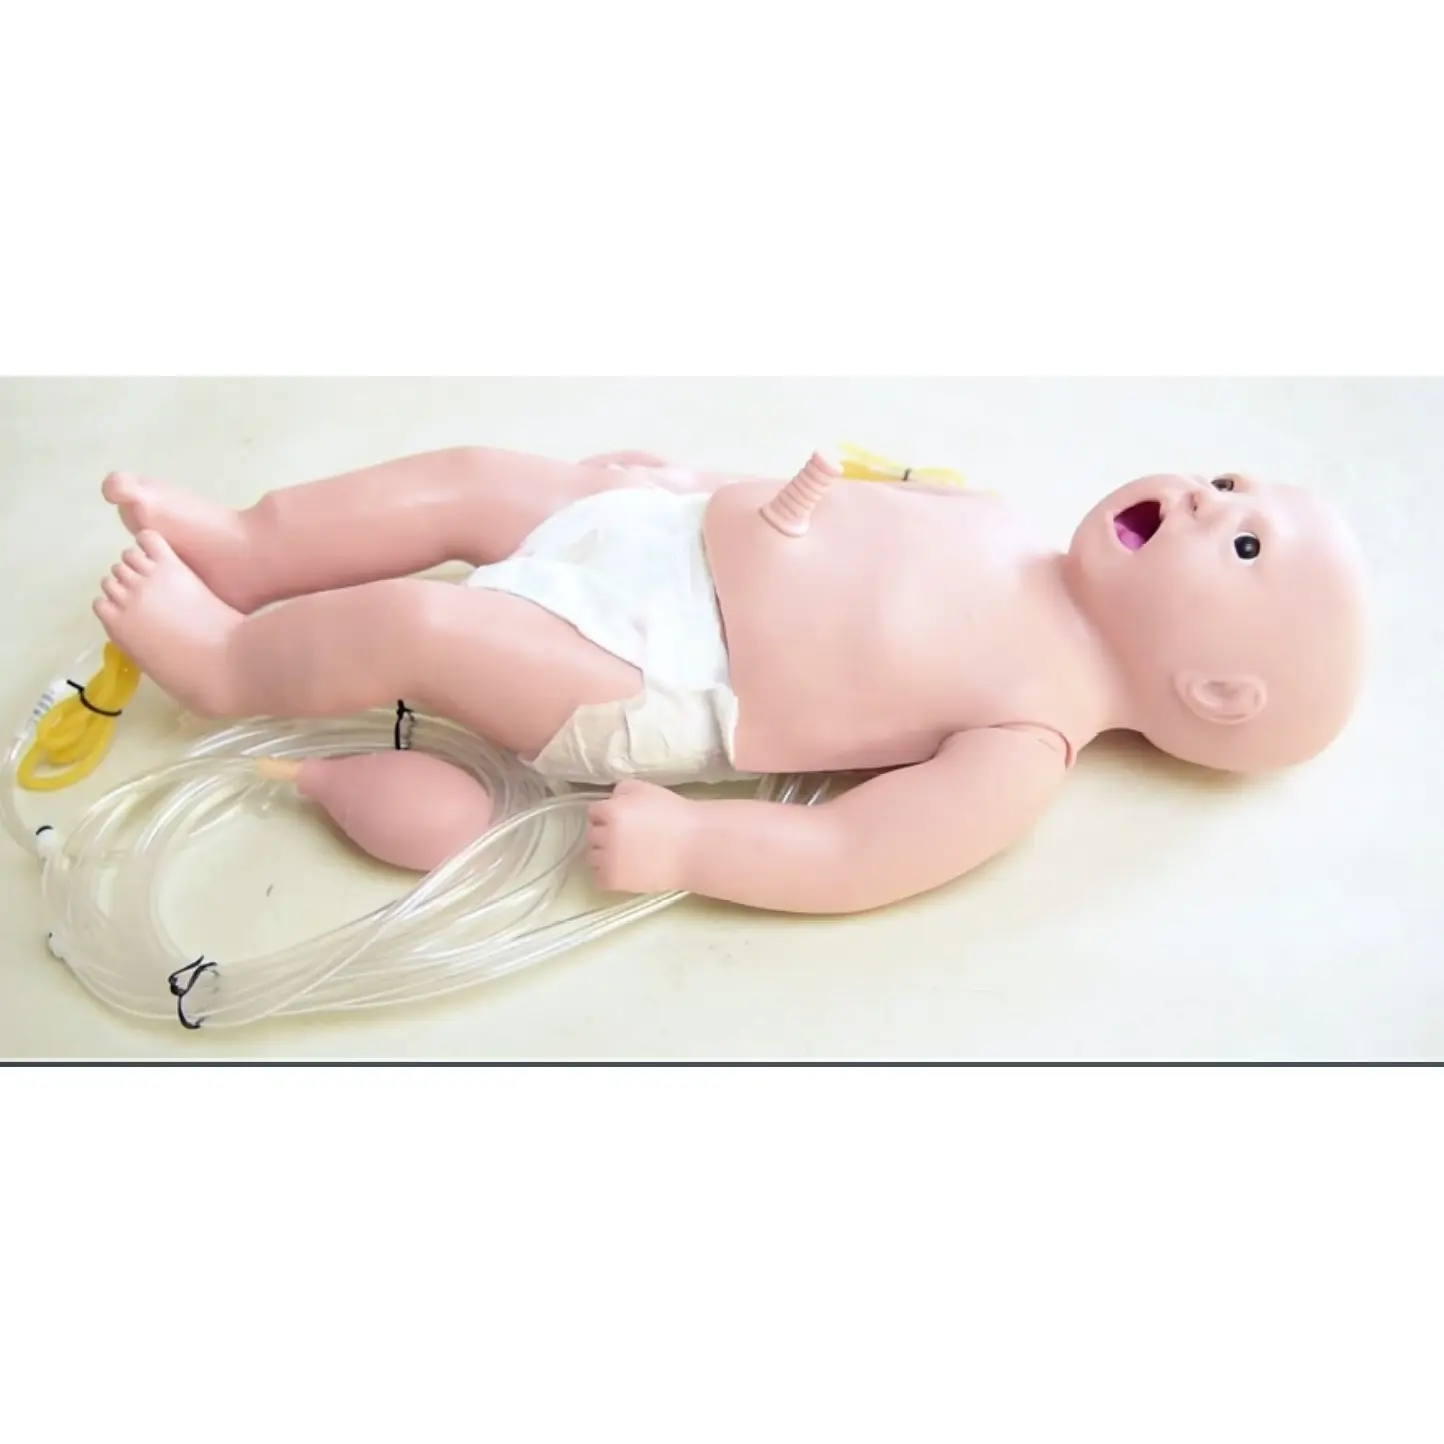 Manichino per allattamento e rcp, modello per la cura del neonato, manichini per neonati medici